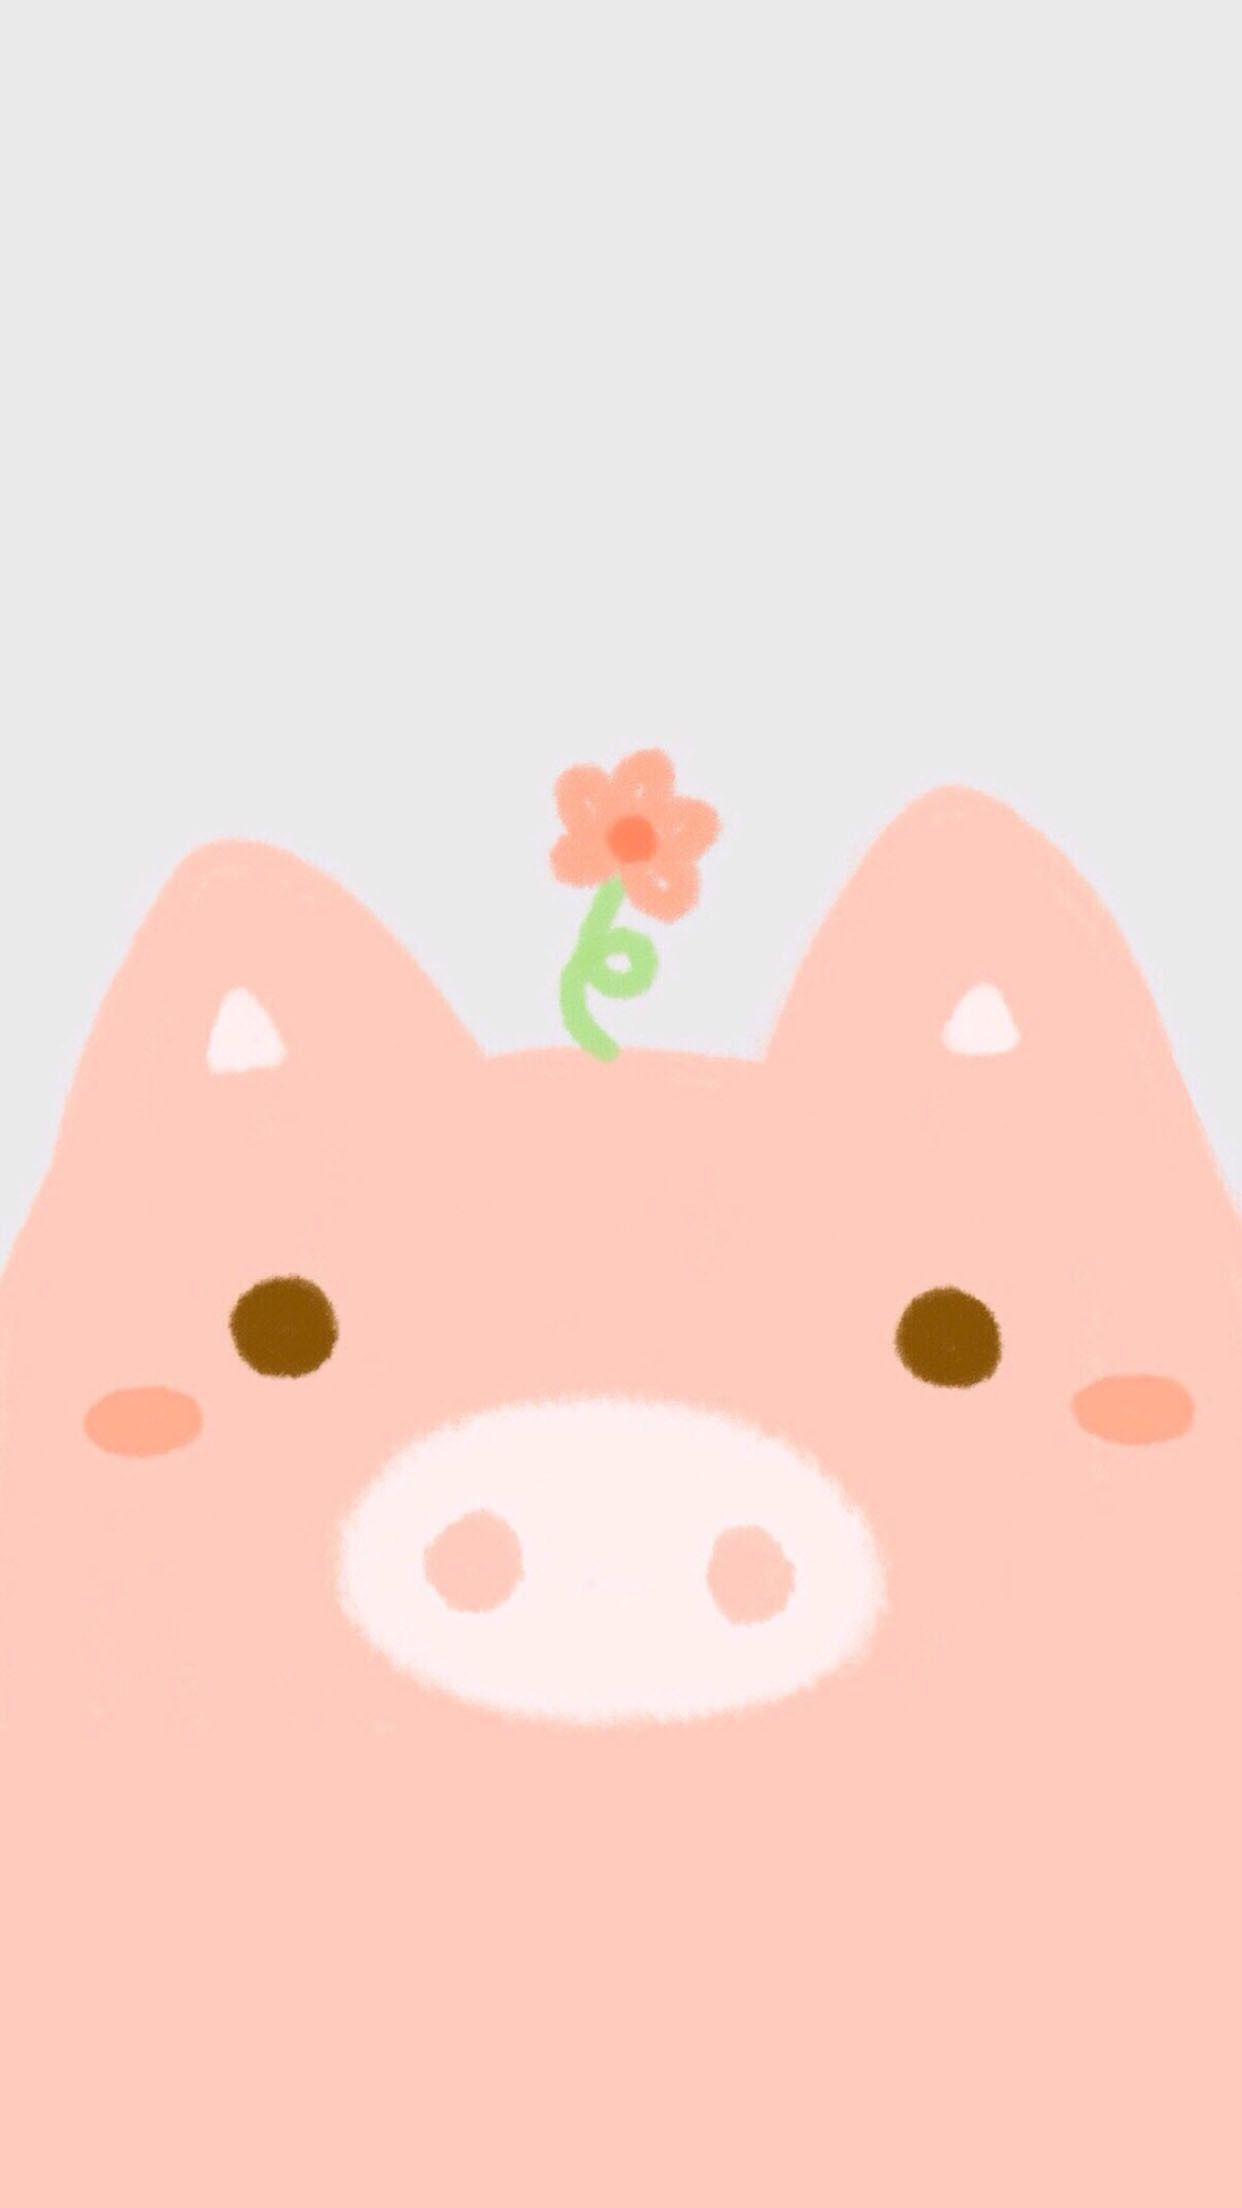 Little Pig. Pig wallpaper, Cute pigs, Wallpaper